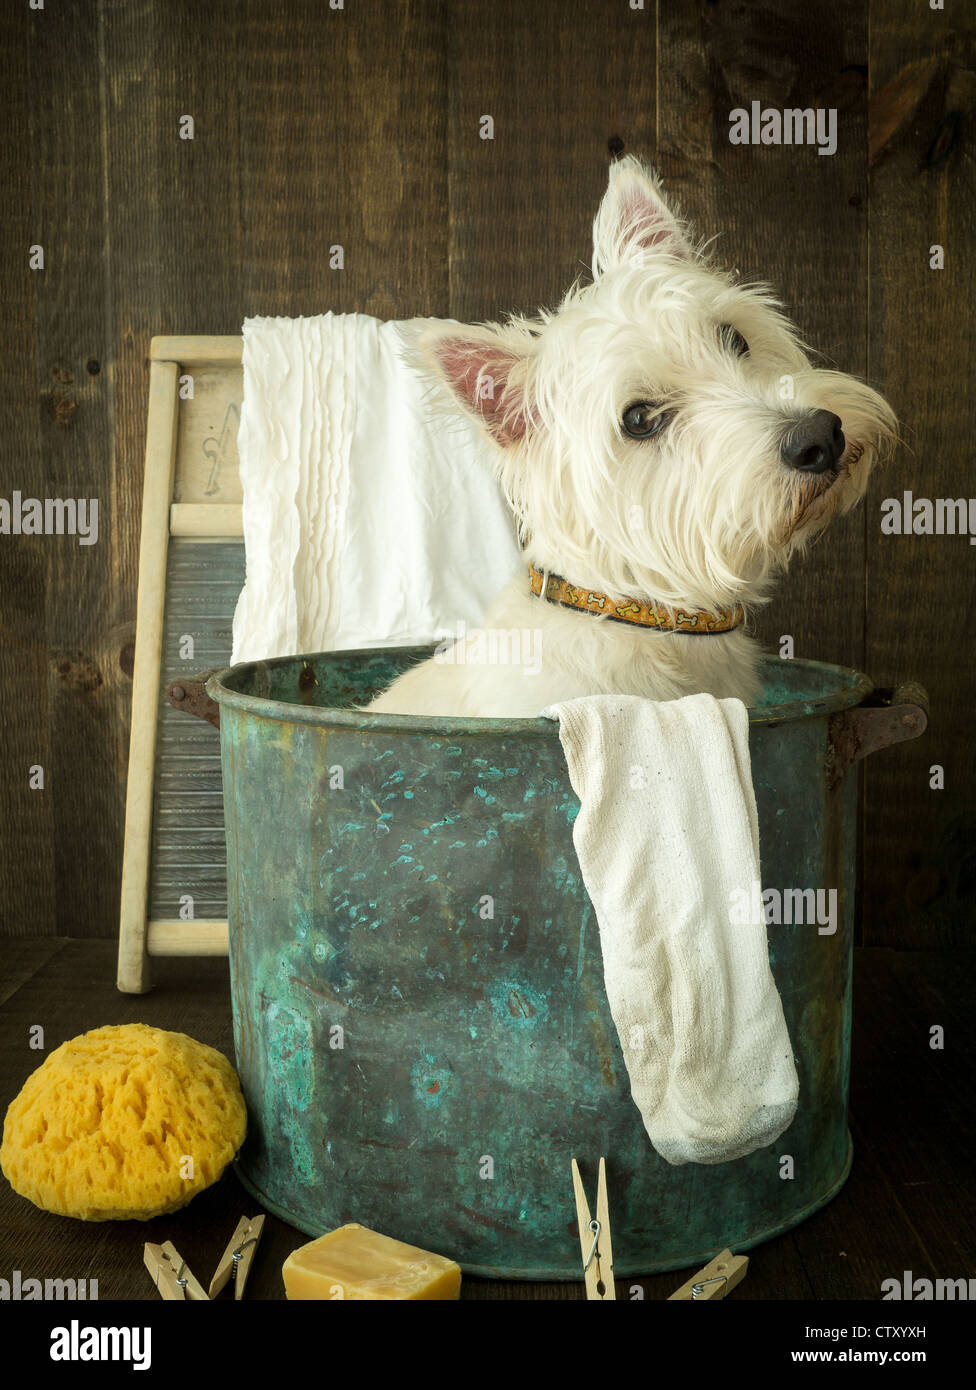 Badezeit für einen süßen kleinen weißen Hund. Stockfoto